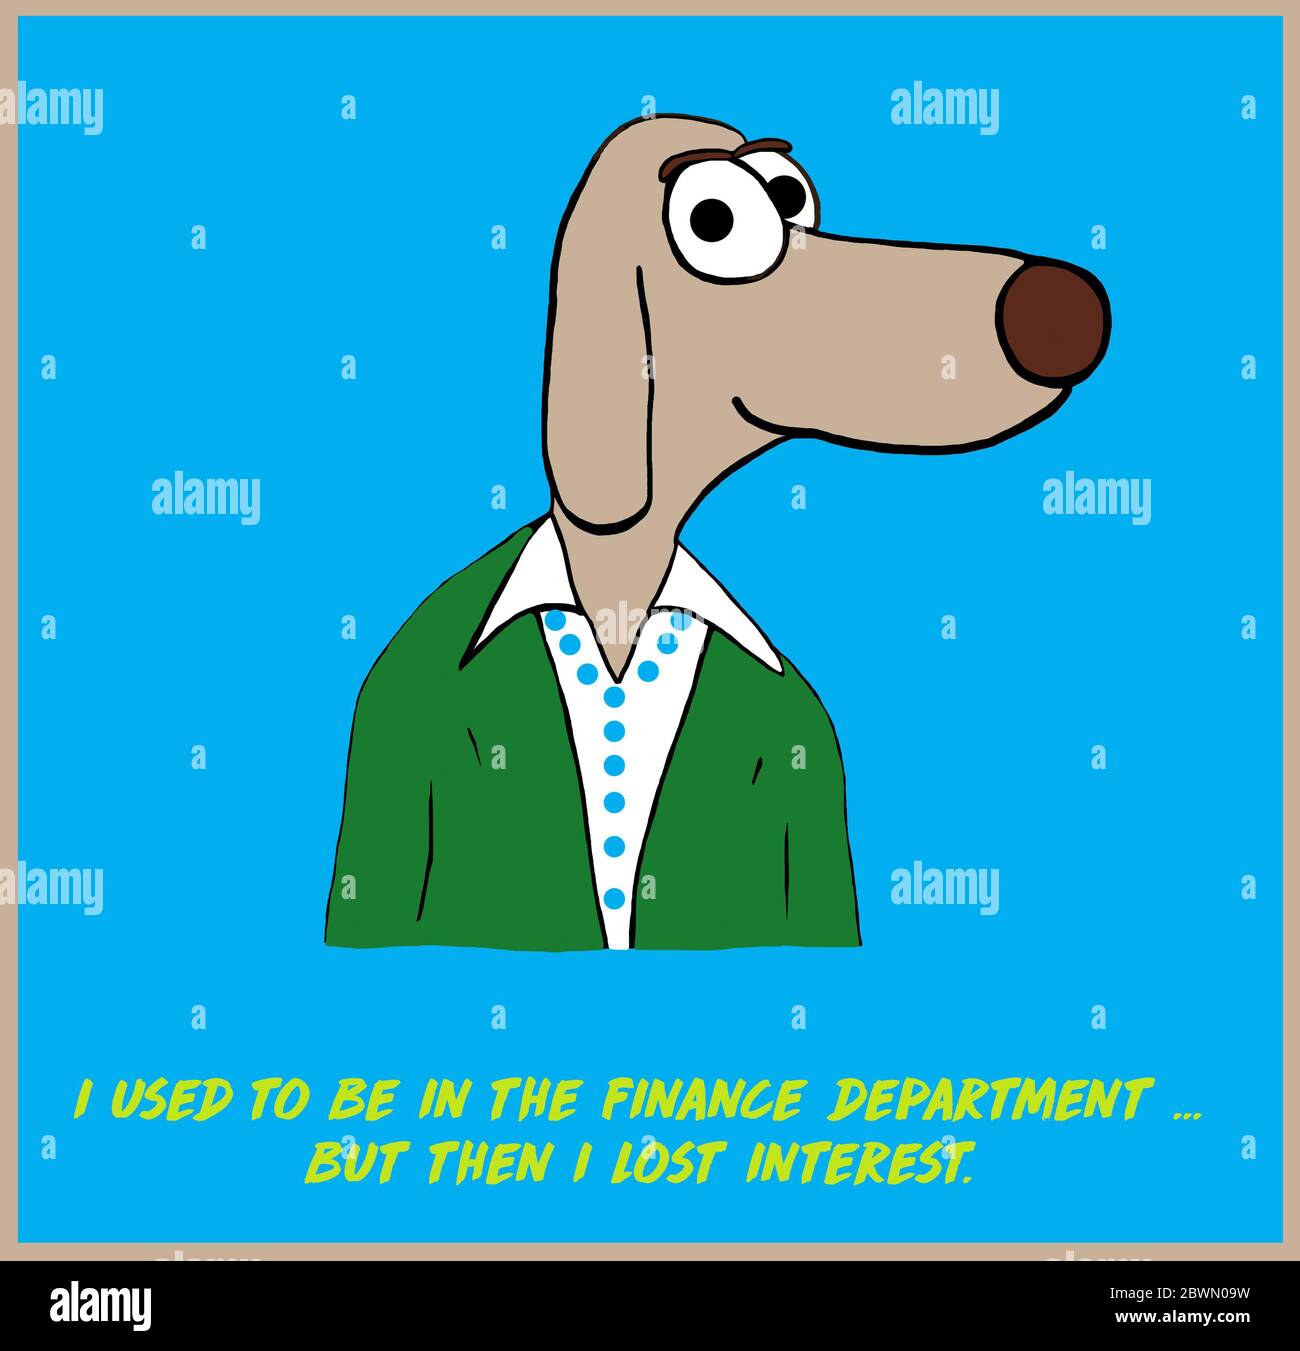 Farbe Cartoon Wortspiel einer Hündin, die in der Finanzabteilung verwendet werden, aber dann das Interesse verloren. Stockfoto